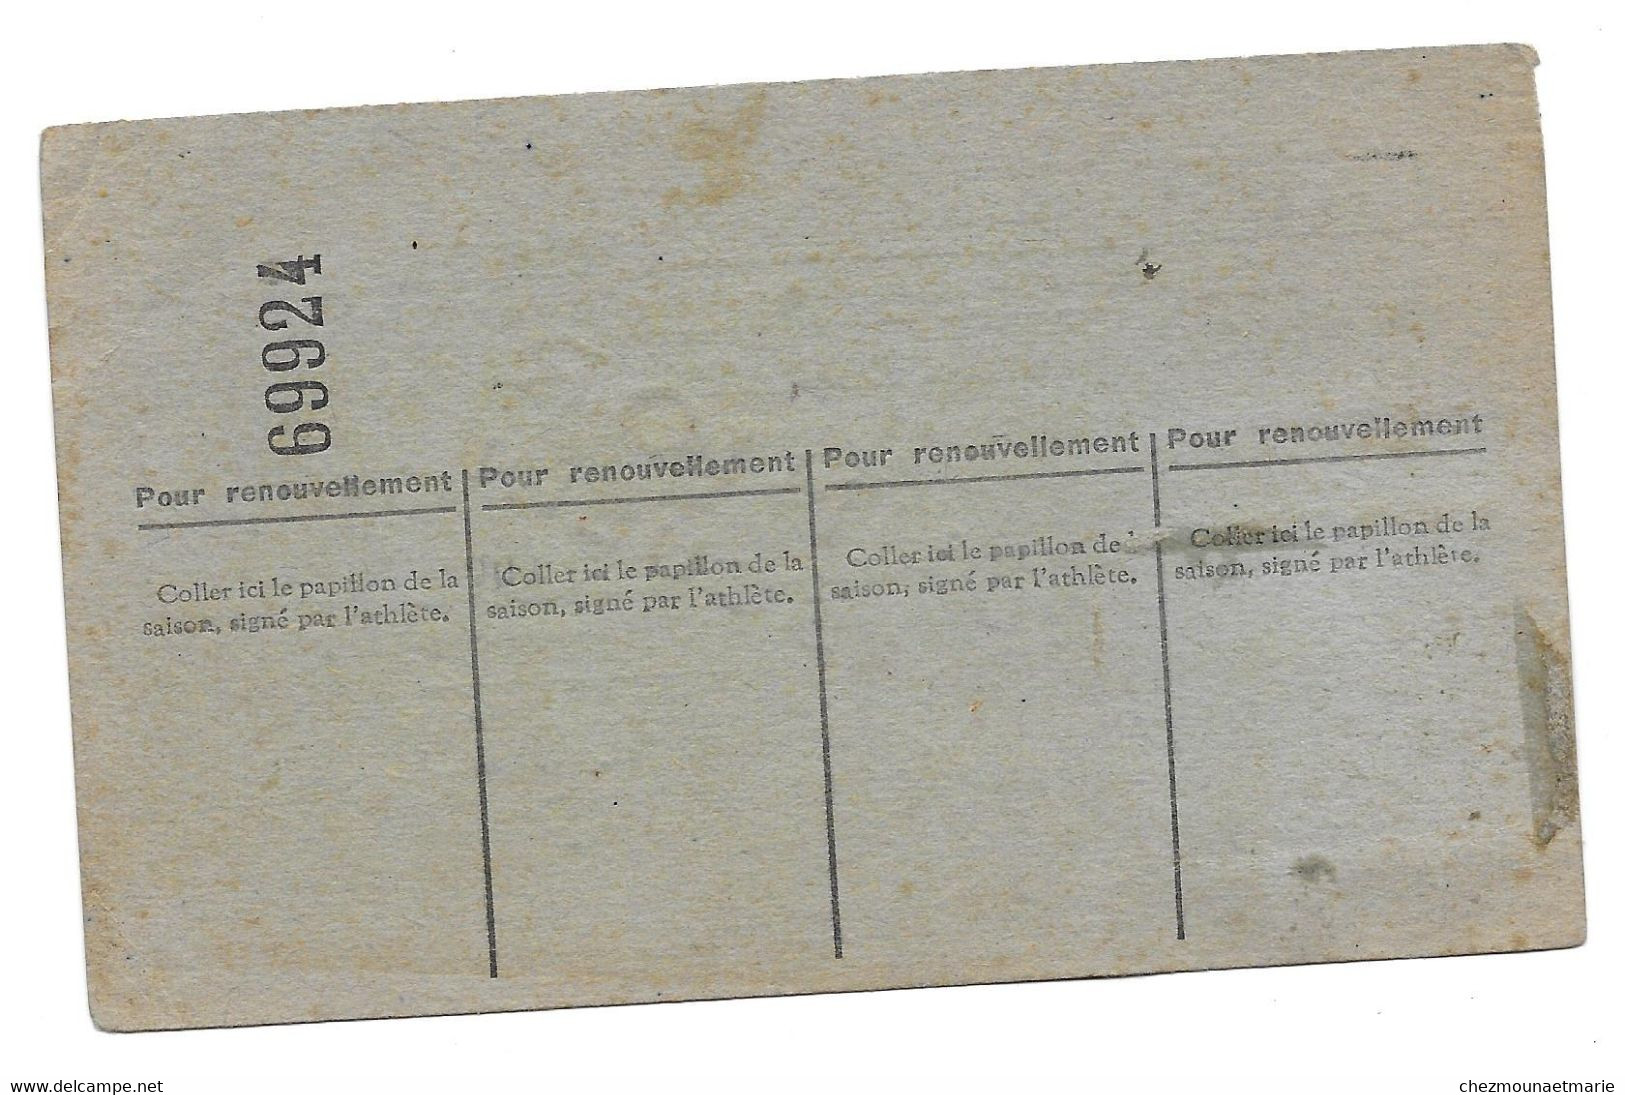 1946 ESPERANCE LEDONIENNE LONS LE SAUNIER FAIVRE ANDRE - CARTE LICENCE ATHLETISME - Historical Documents